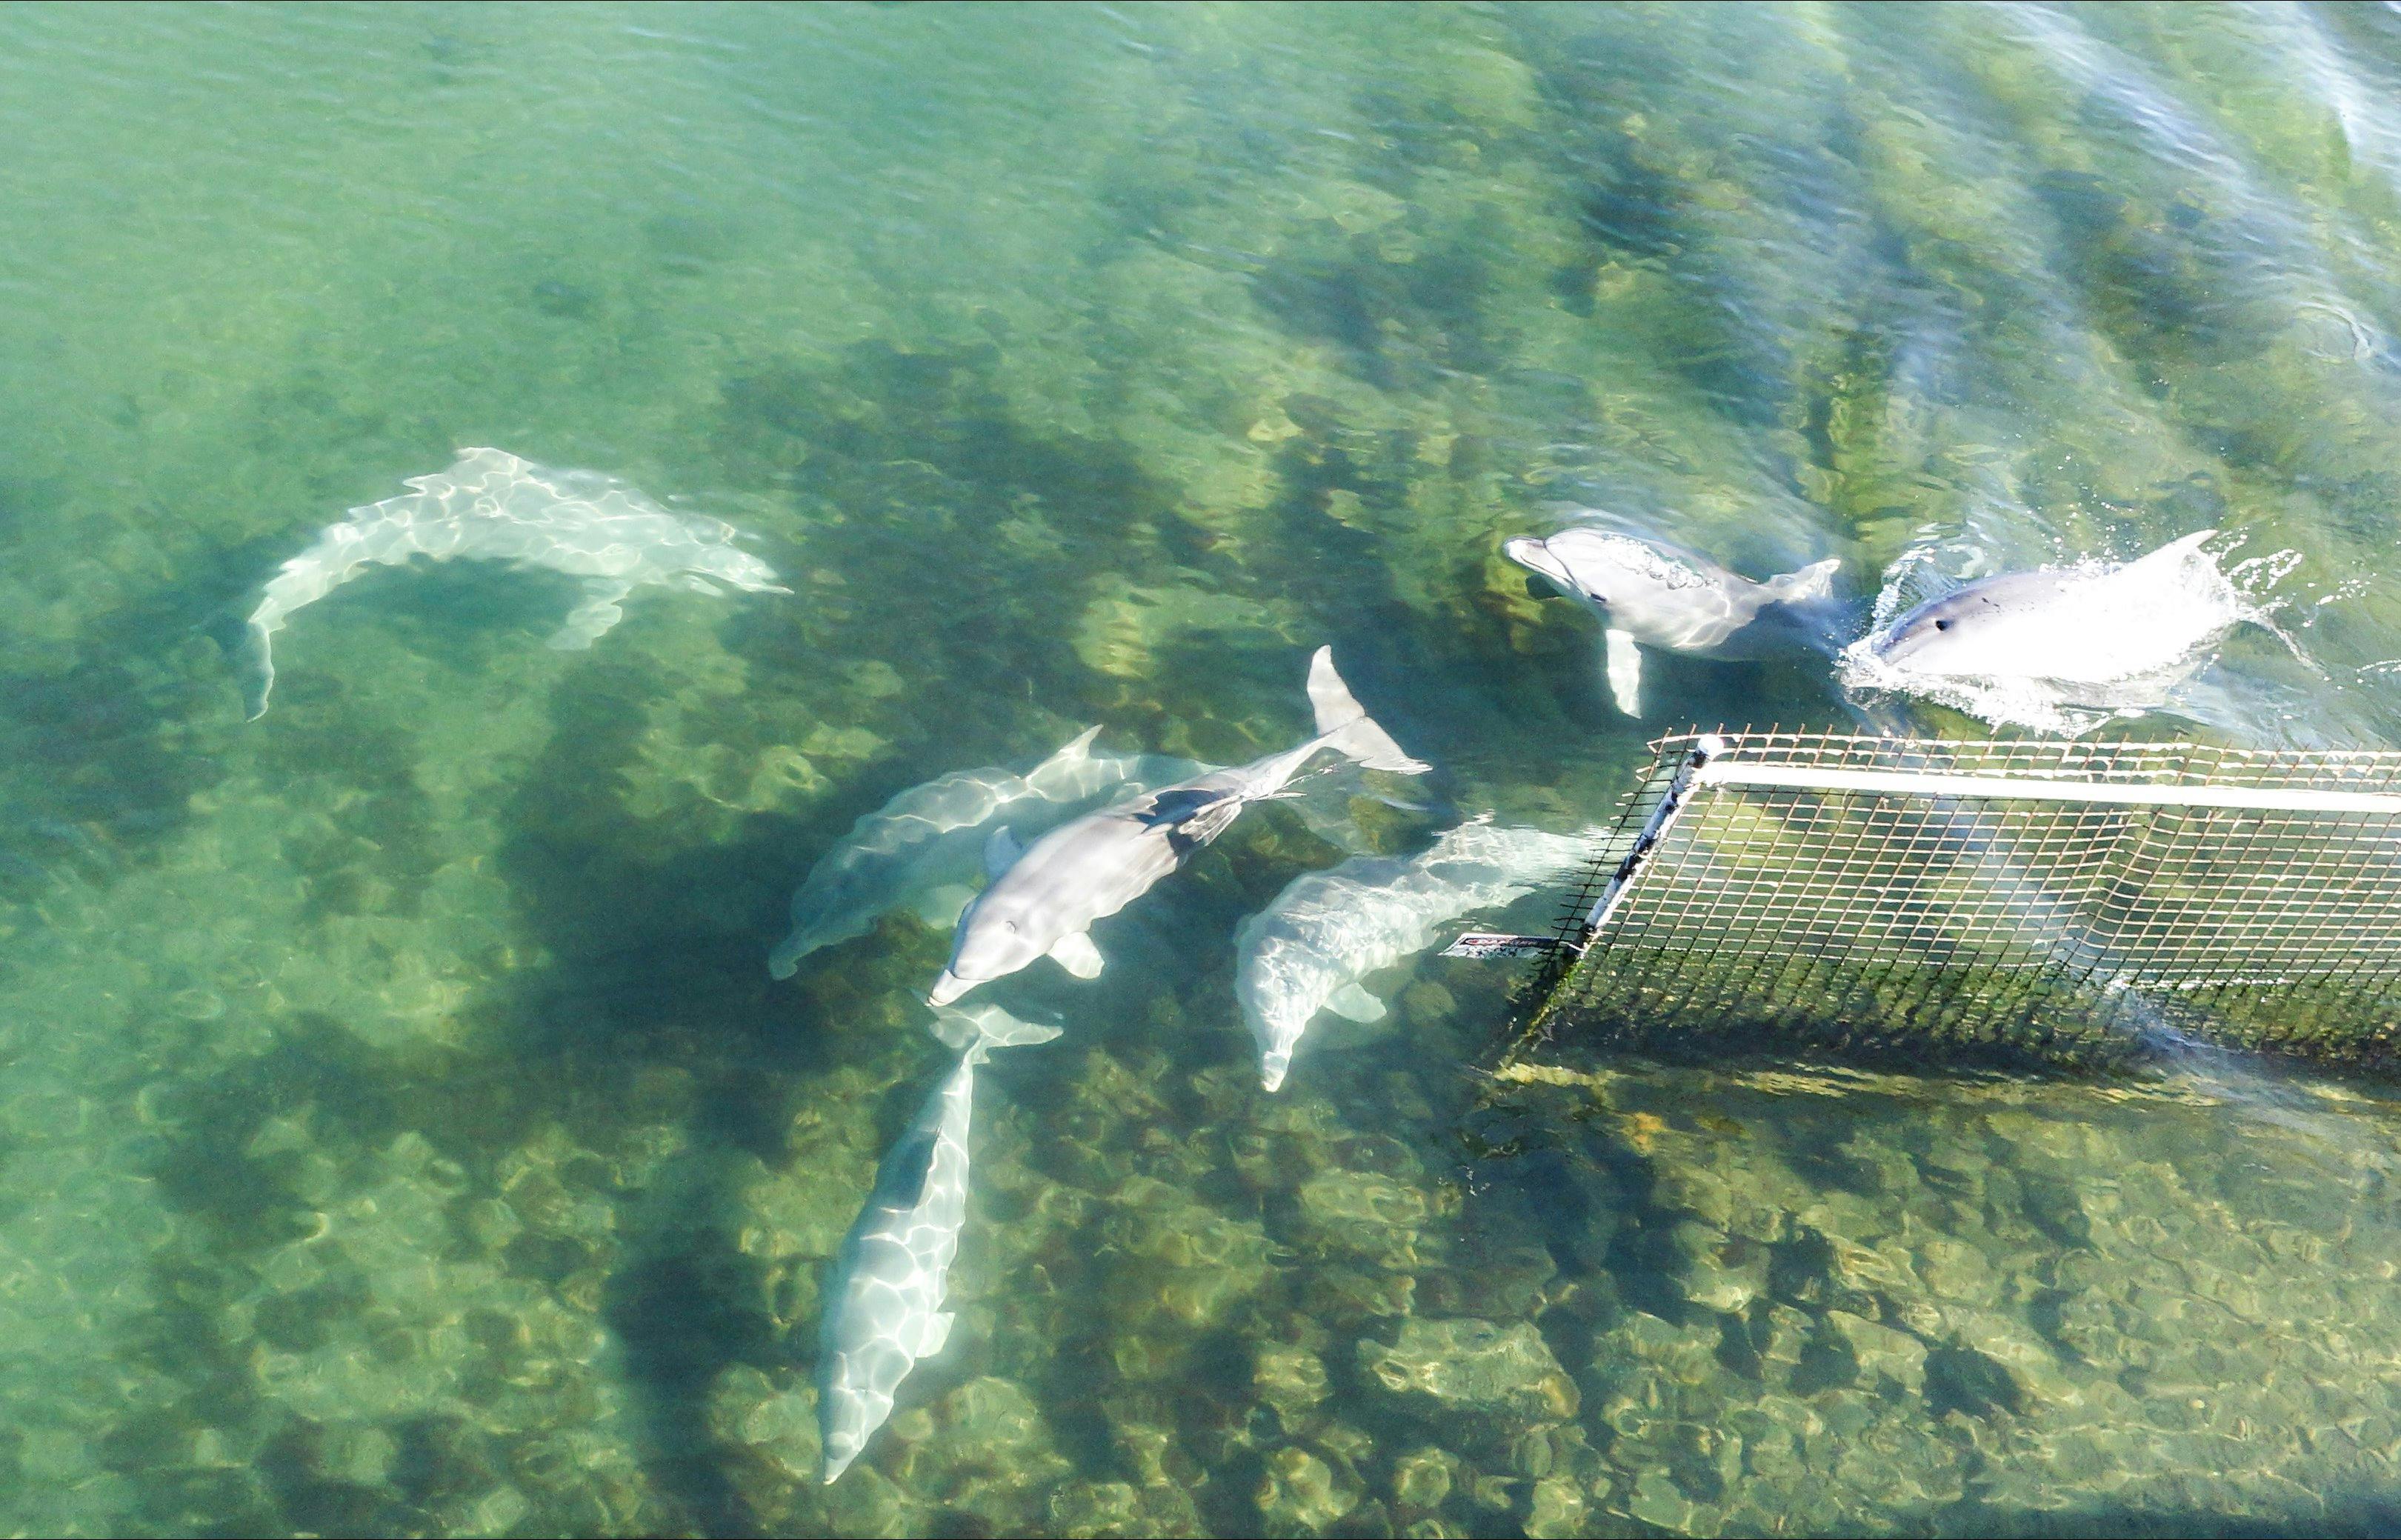 Adelaide Dolphin Sanctuary